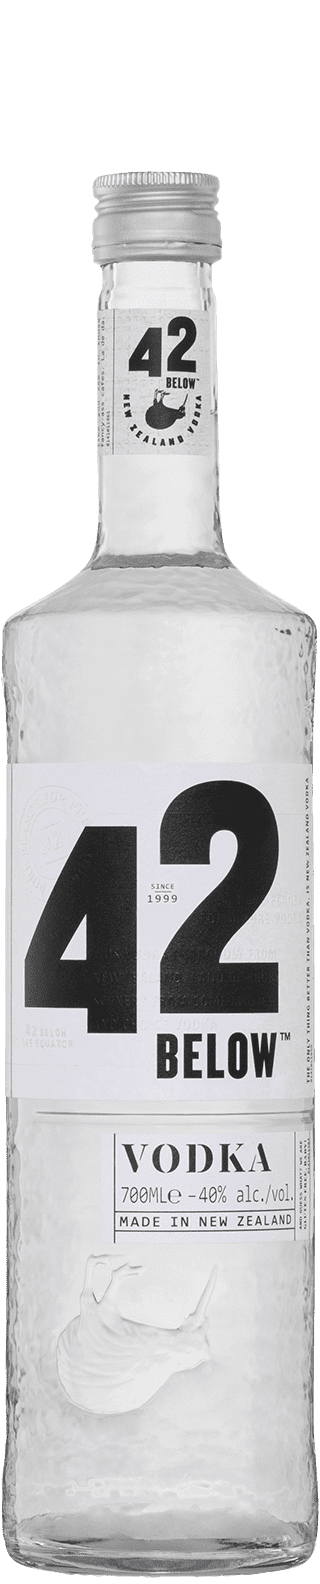 vodka brands in India - 42 Below